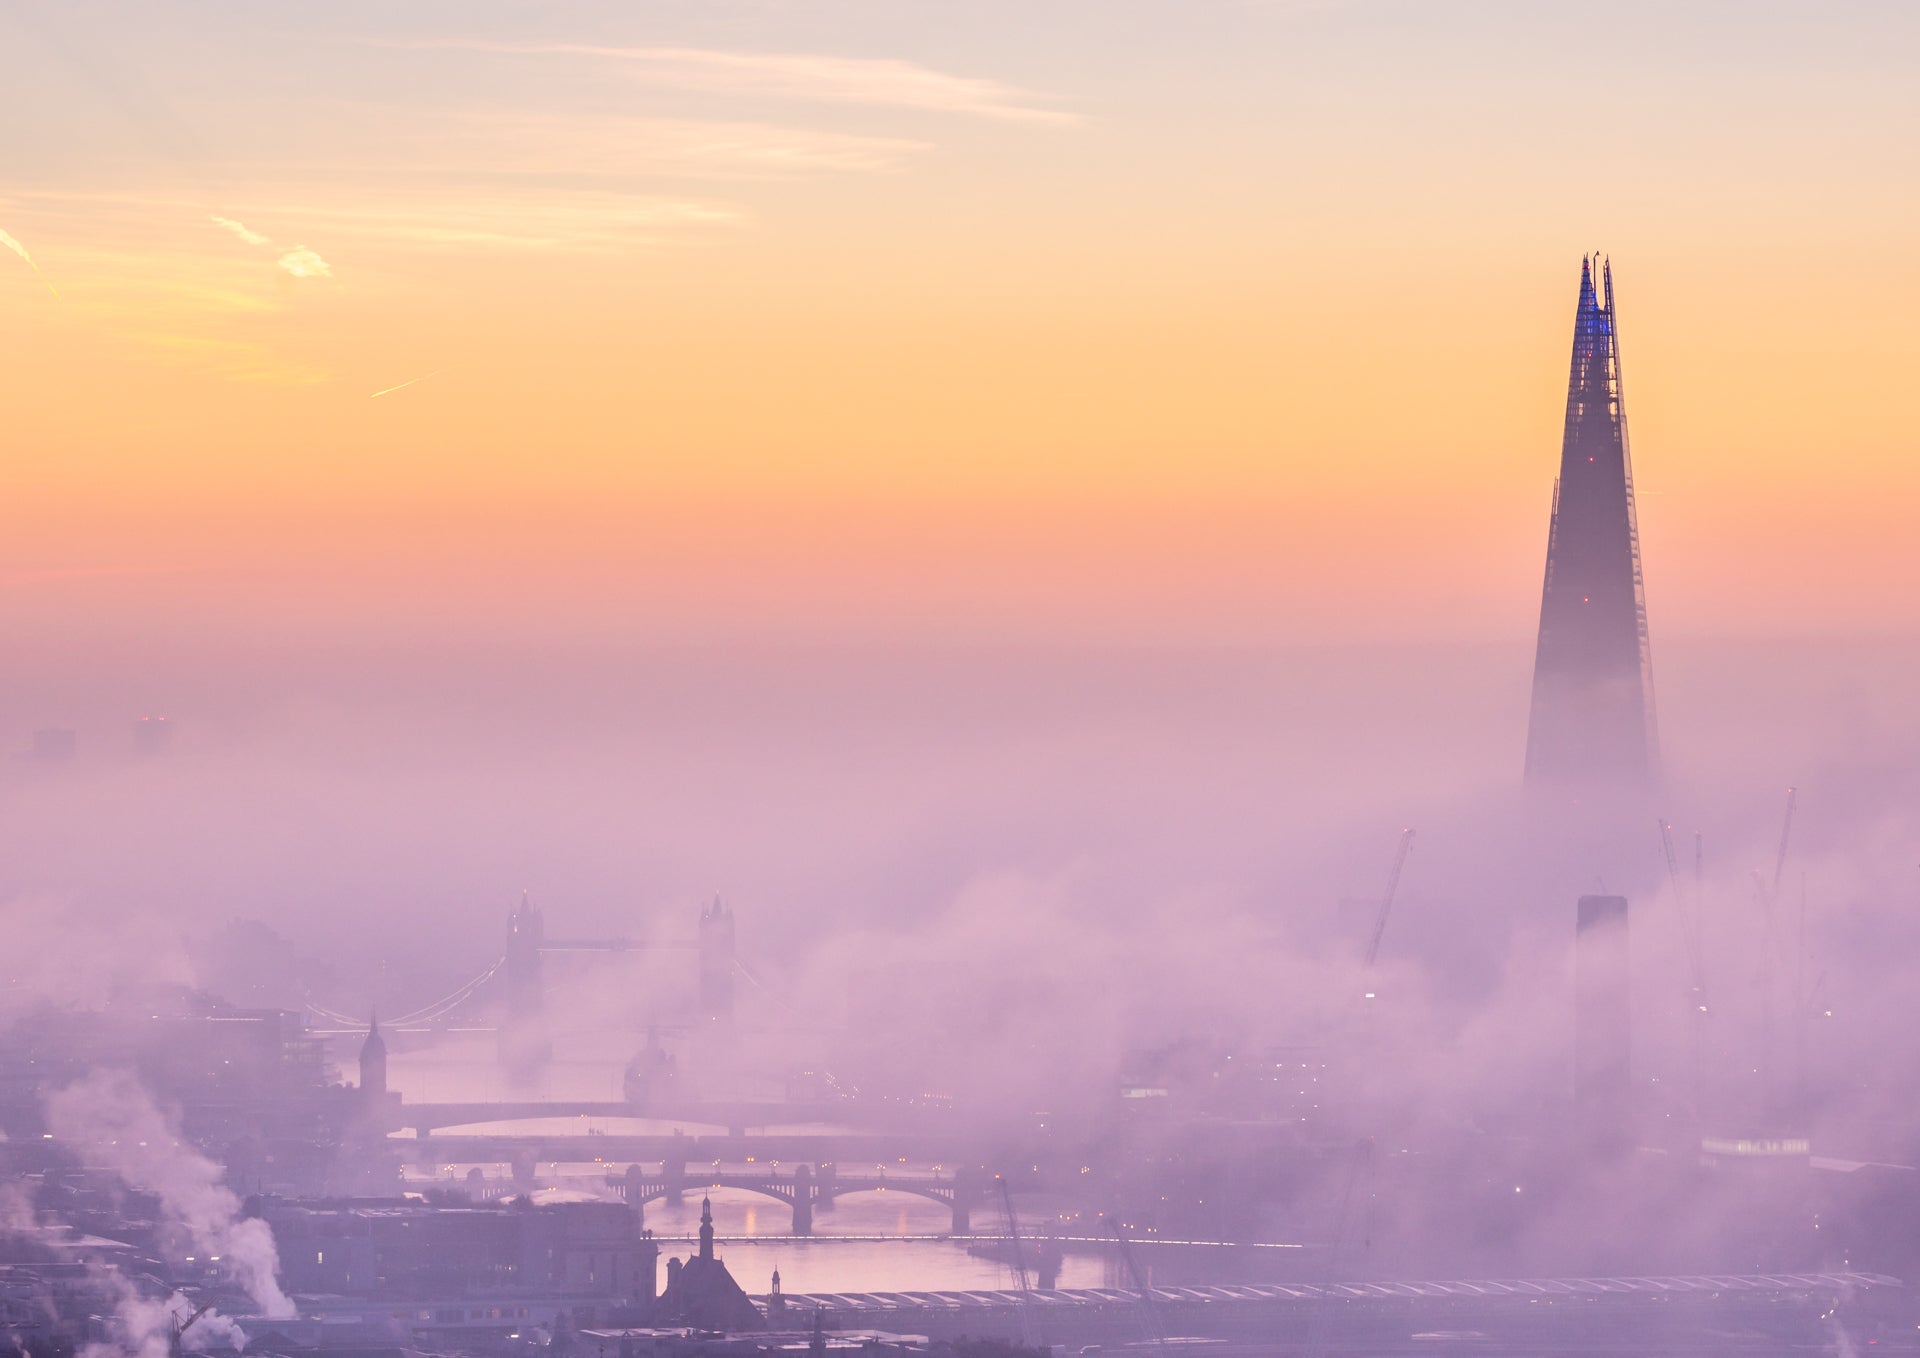 Fog on the Thames